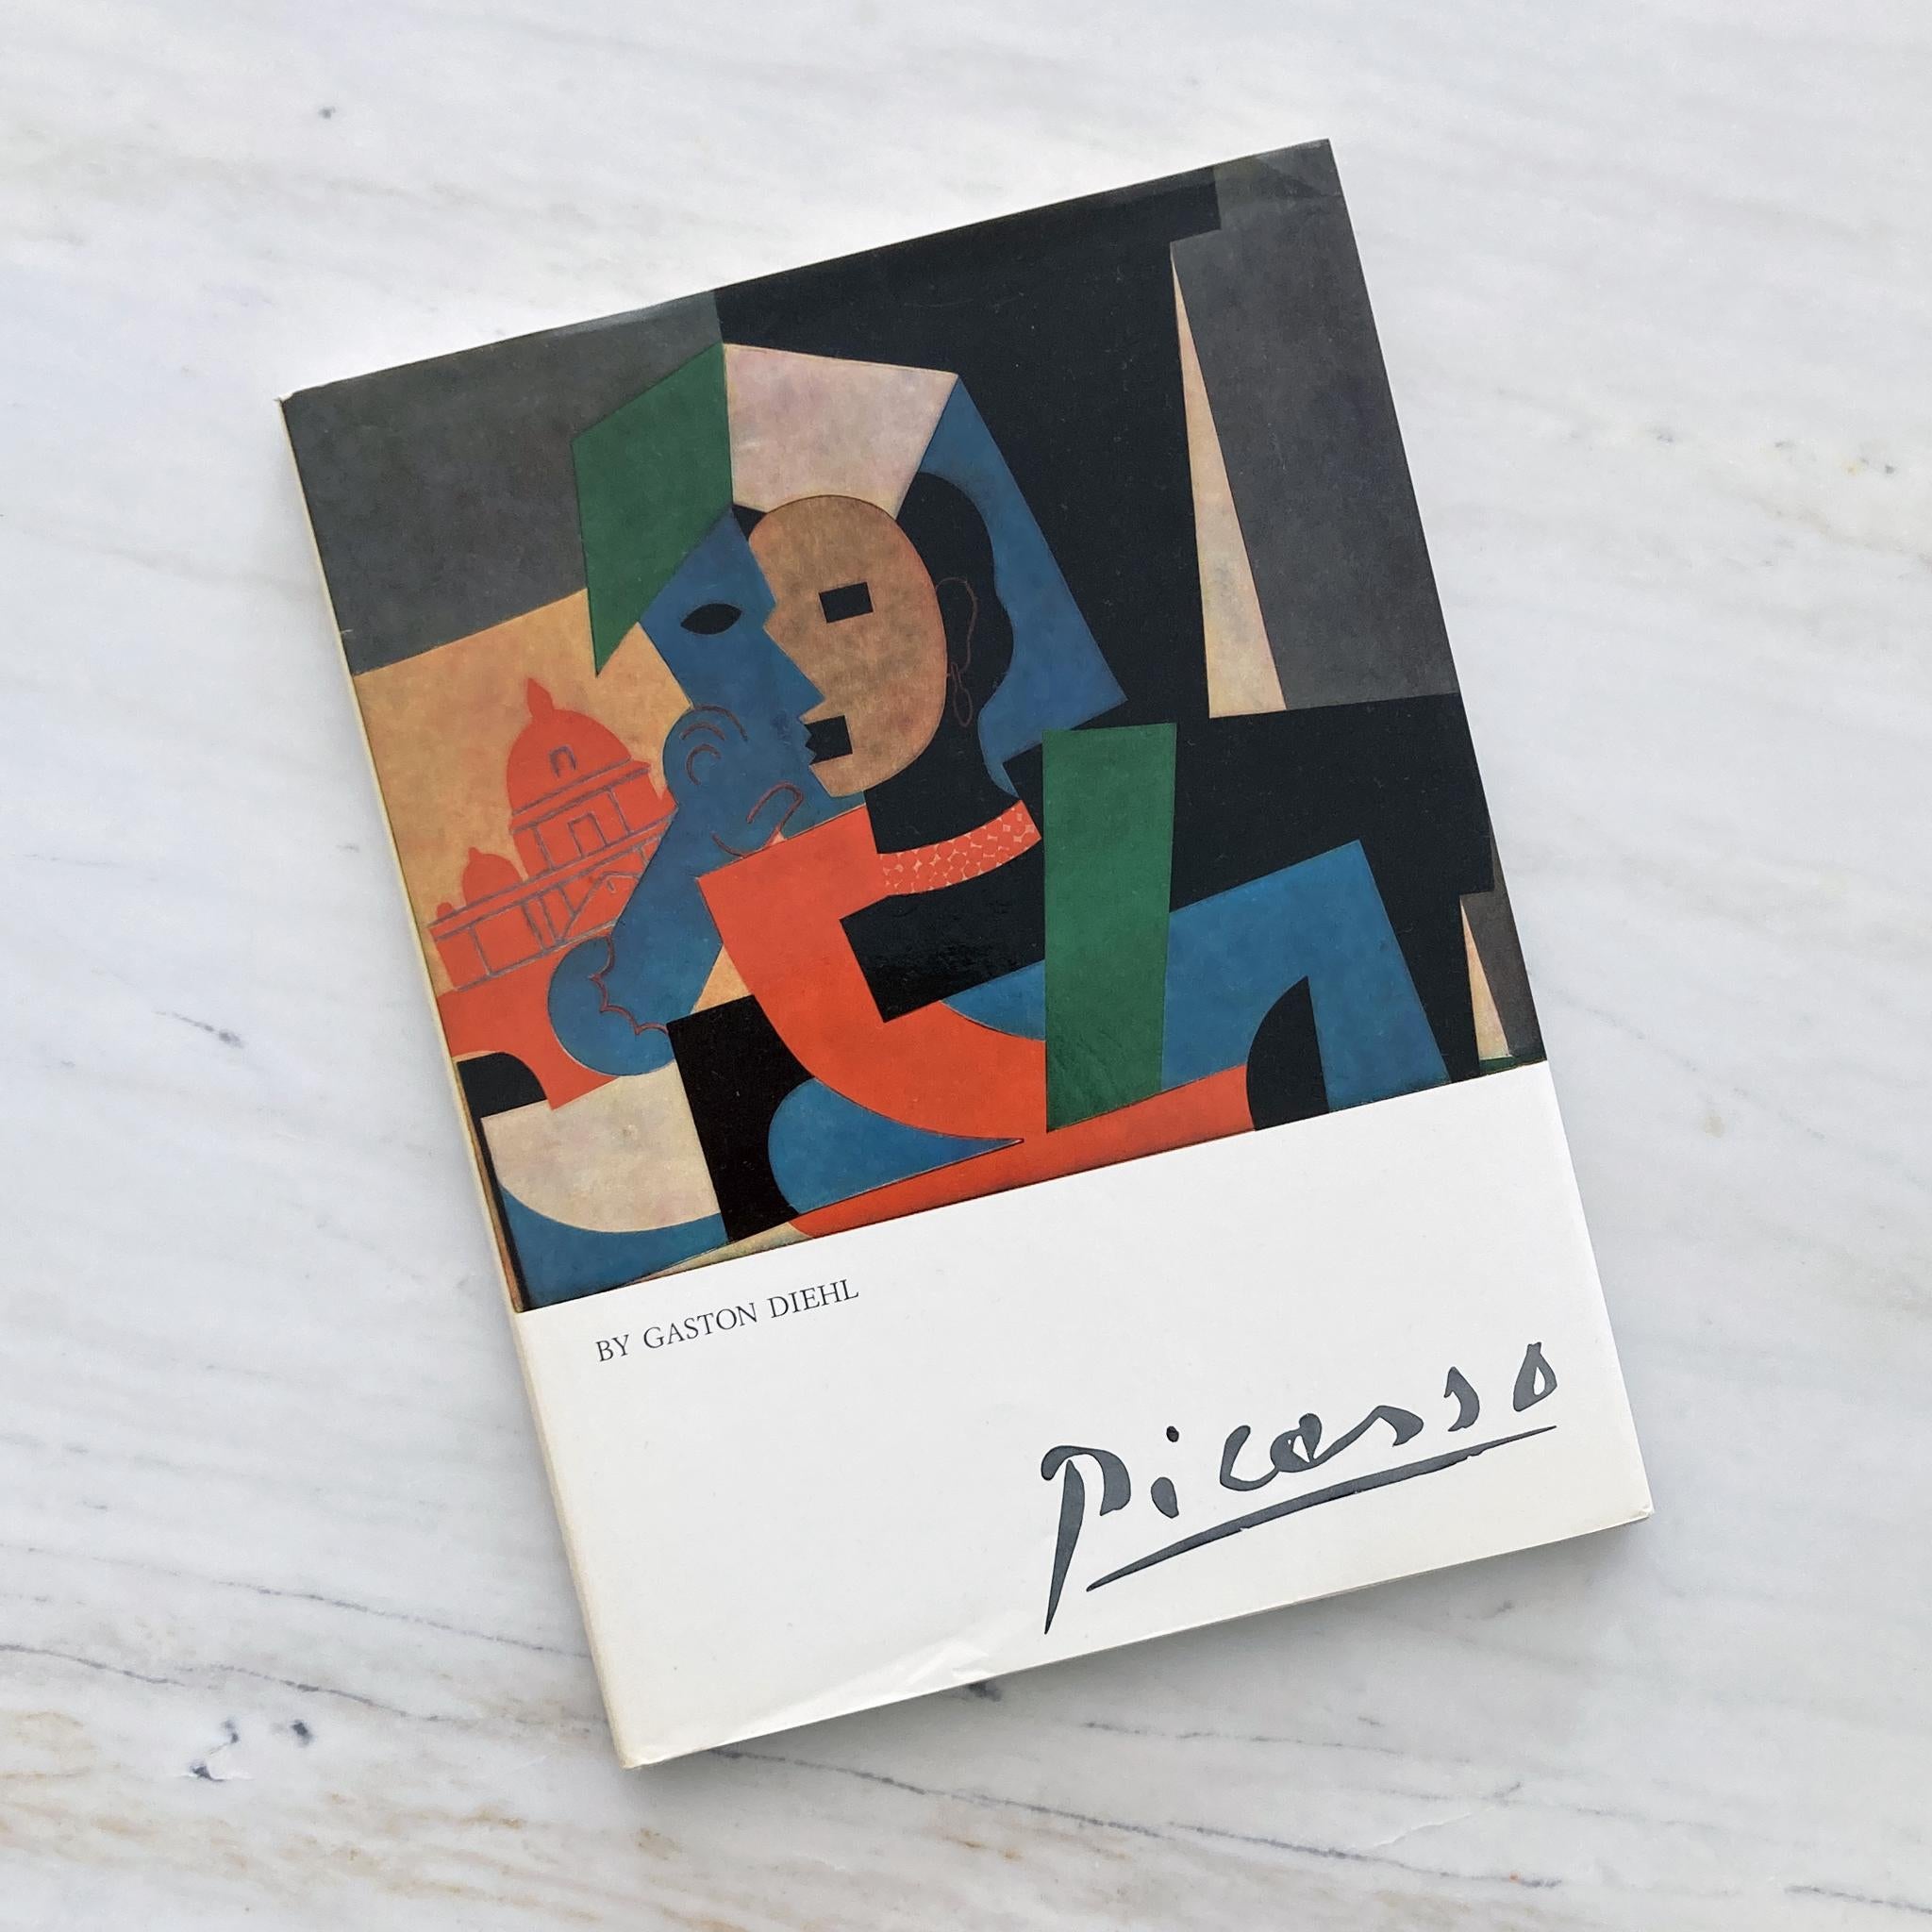 Livre relié d'illustrations et de peintures de Picasso par Gaston Diehl, Bonfini Press 1977, imprimé en Italie. Texte en anglais.

Ce livre explore les nombreux éléments qui ont contribué à la brillante œuvre de Picasso. Gaston Diehl, critique d'art